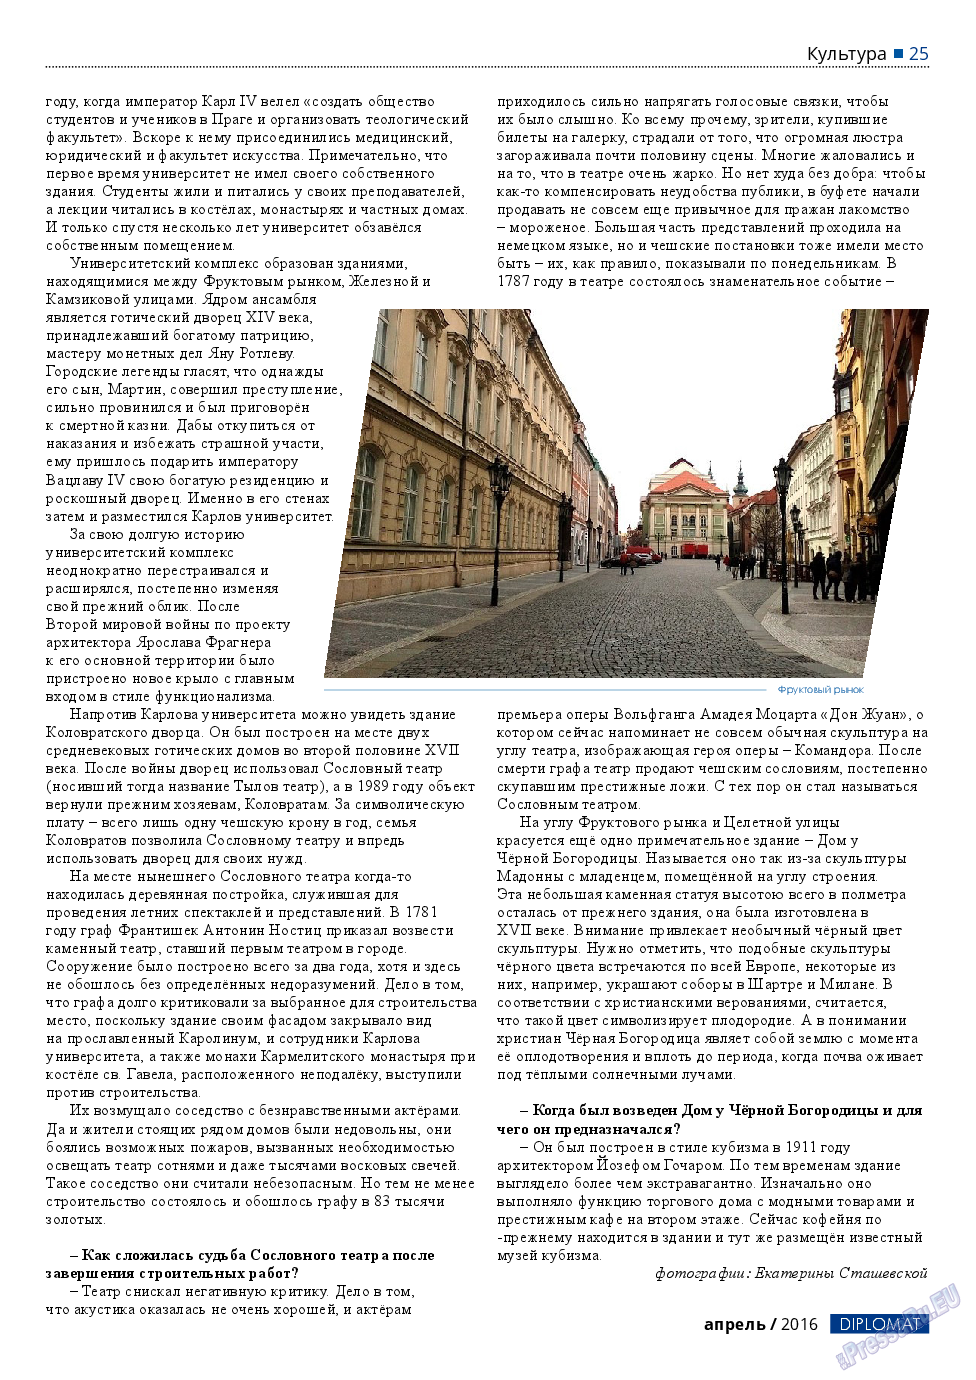 Diplomat, газета. 2016 №79 стр.25